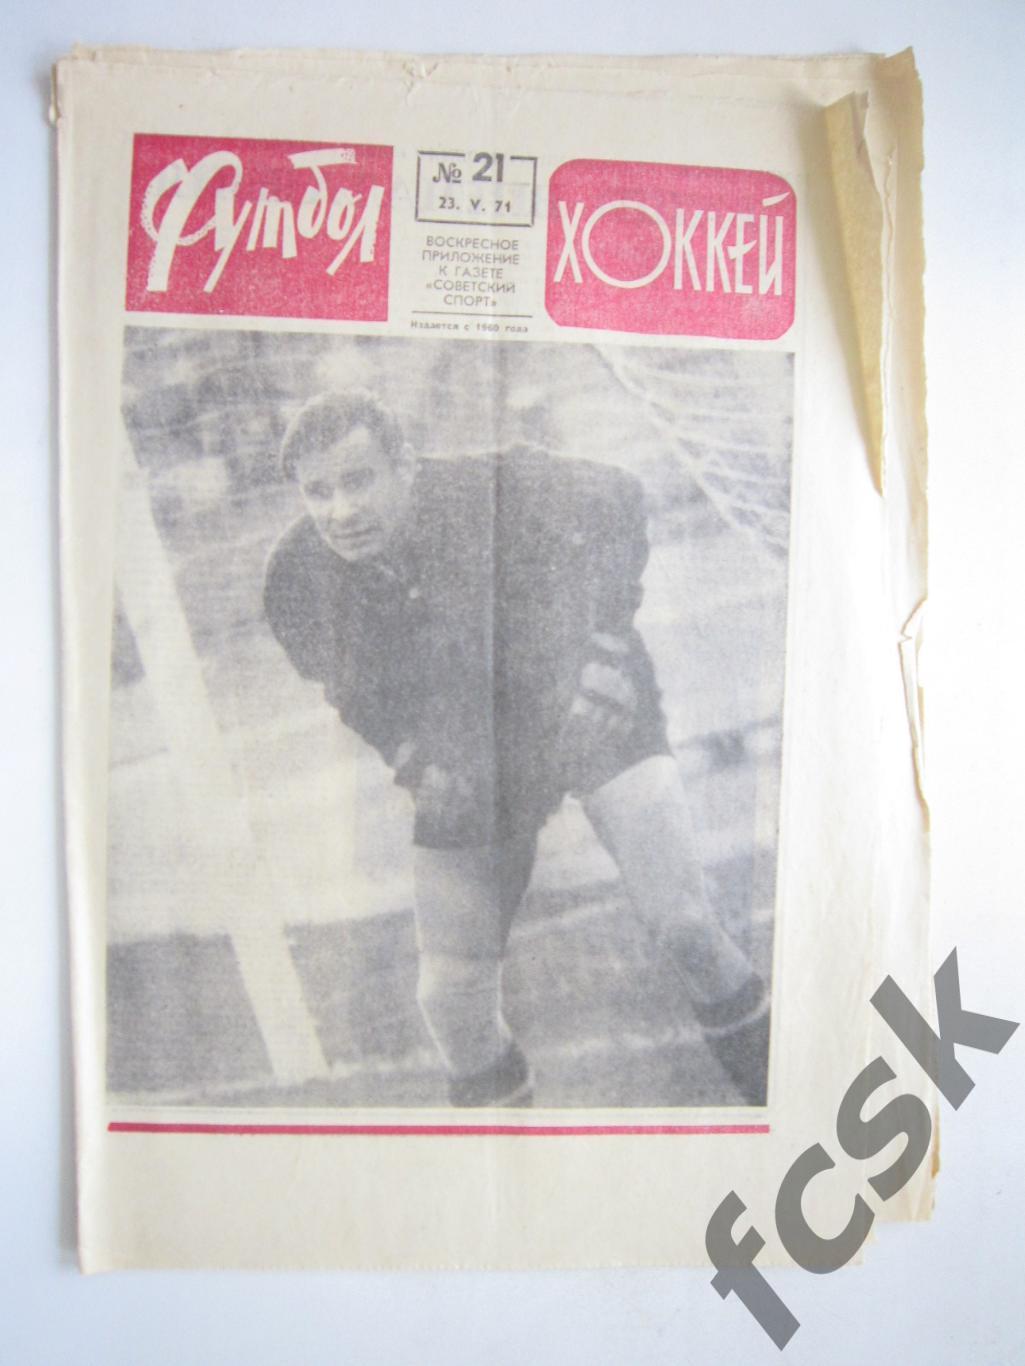 Еженедельник Футбол-Хоккей 1971 № 21 Московская правда (АВ-1)